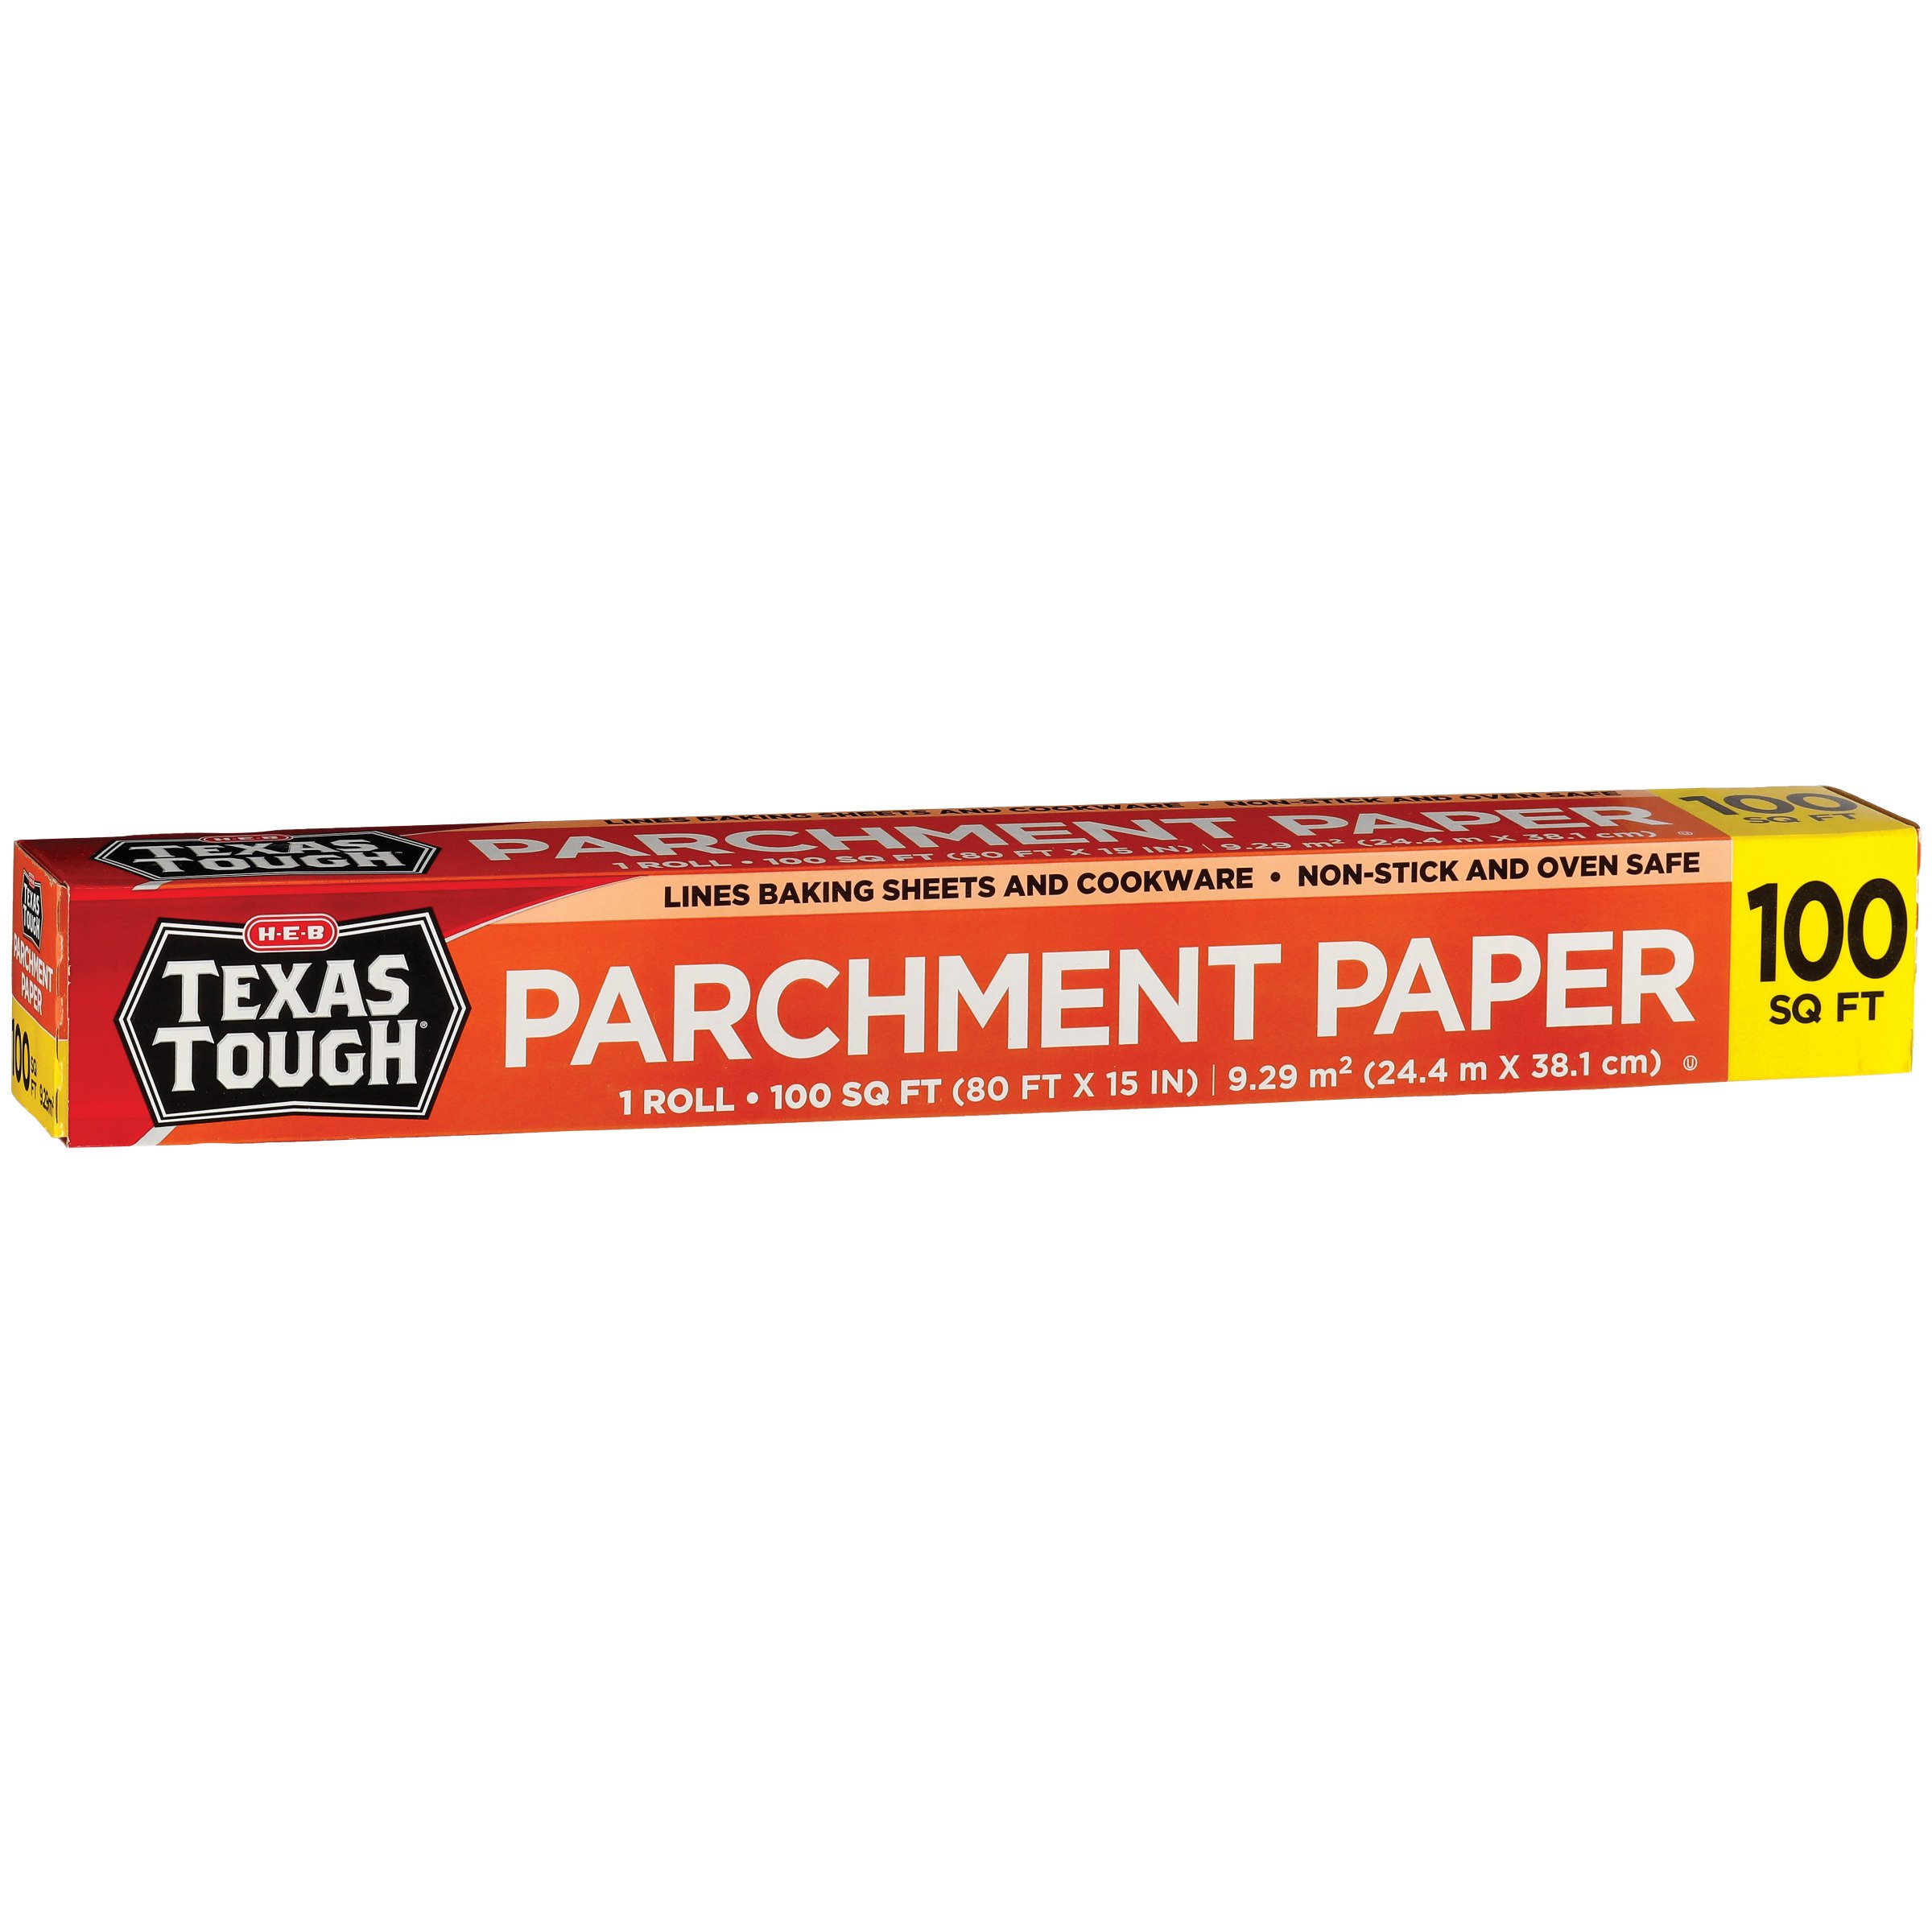 H-E-B Texas Tough Parchment Paper - Shop Foil & Plastic Wrap at H-E-B